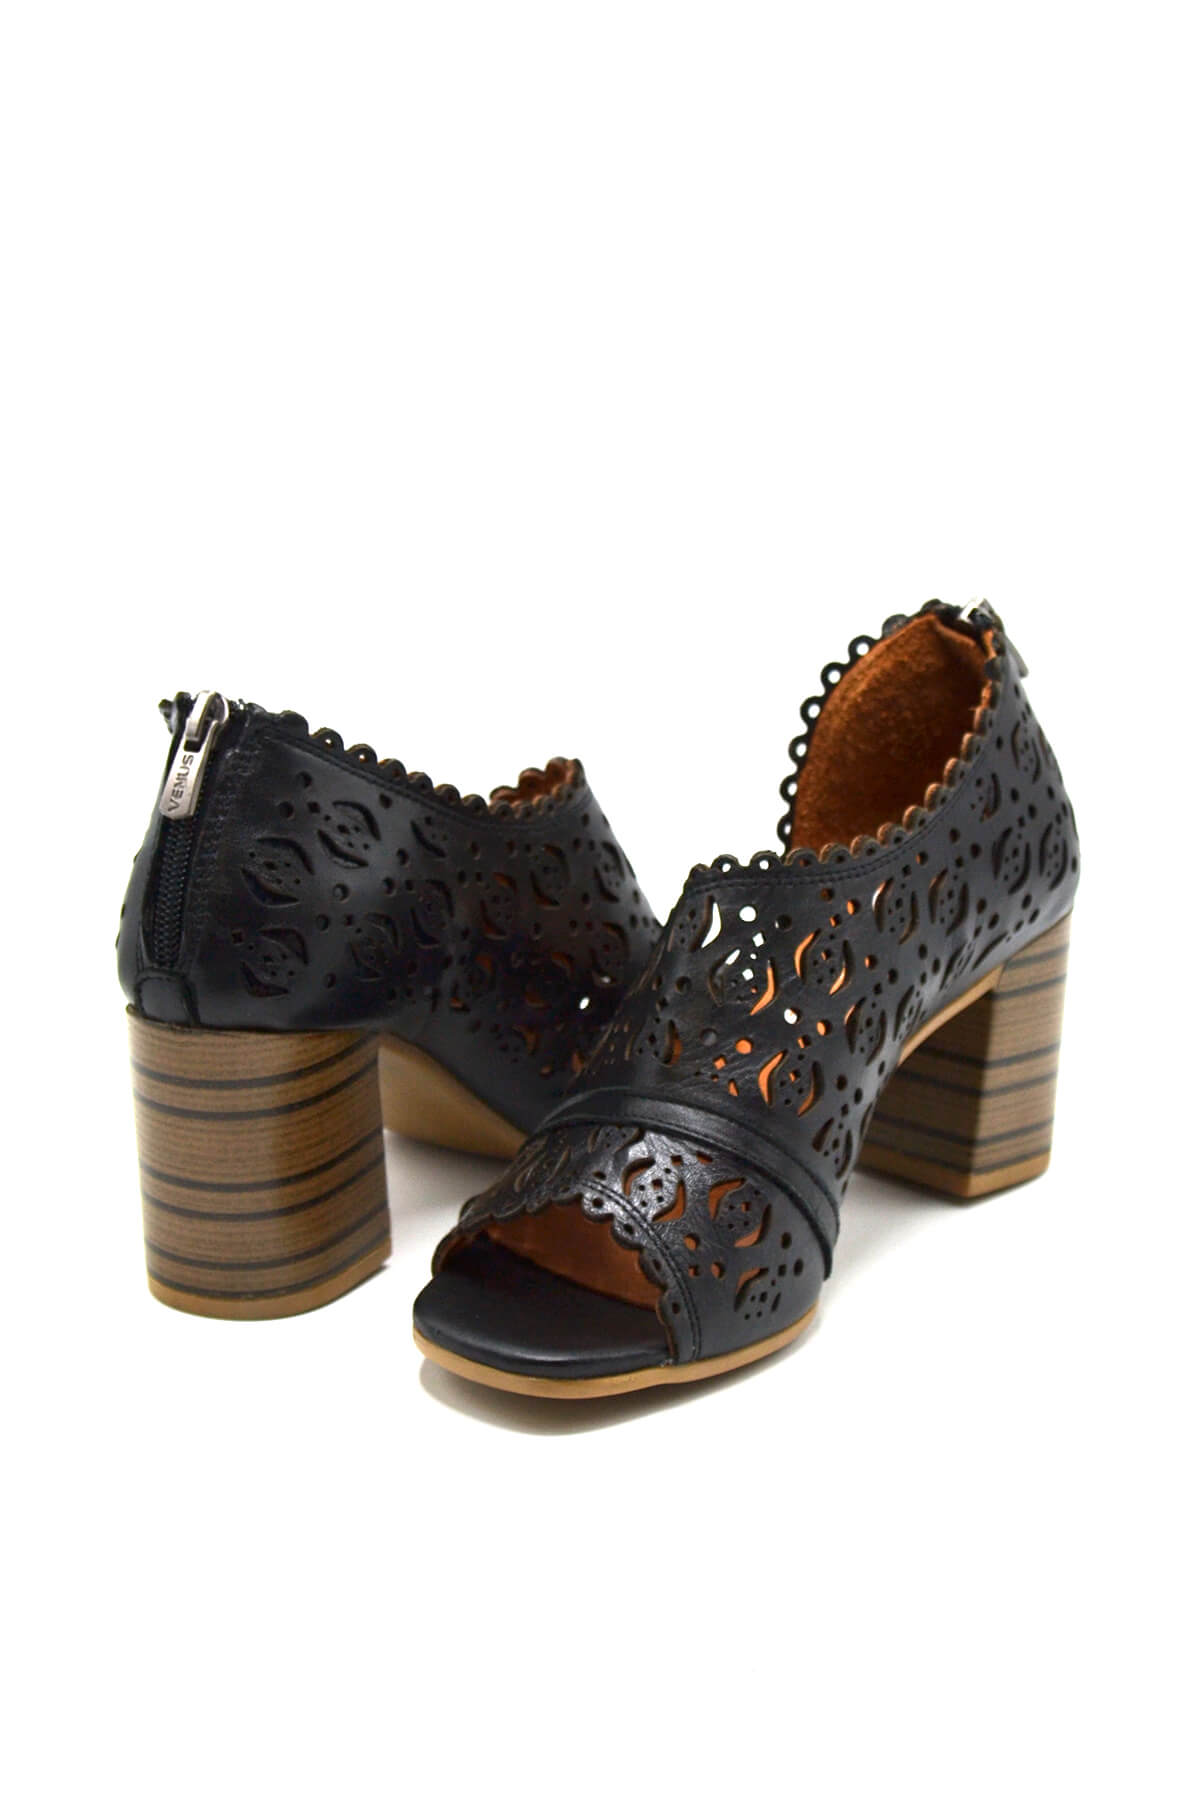 Kadın Yazlık Topuklu Deri Sandalet Siyah 2108511Y - Thumbnail